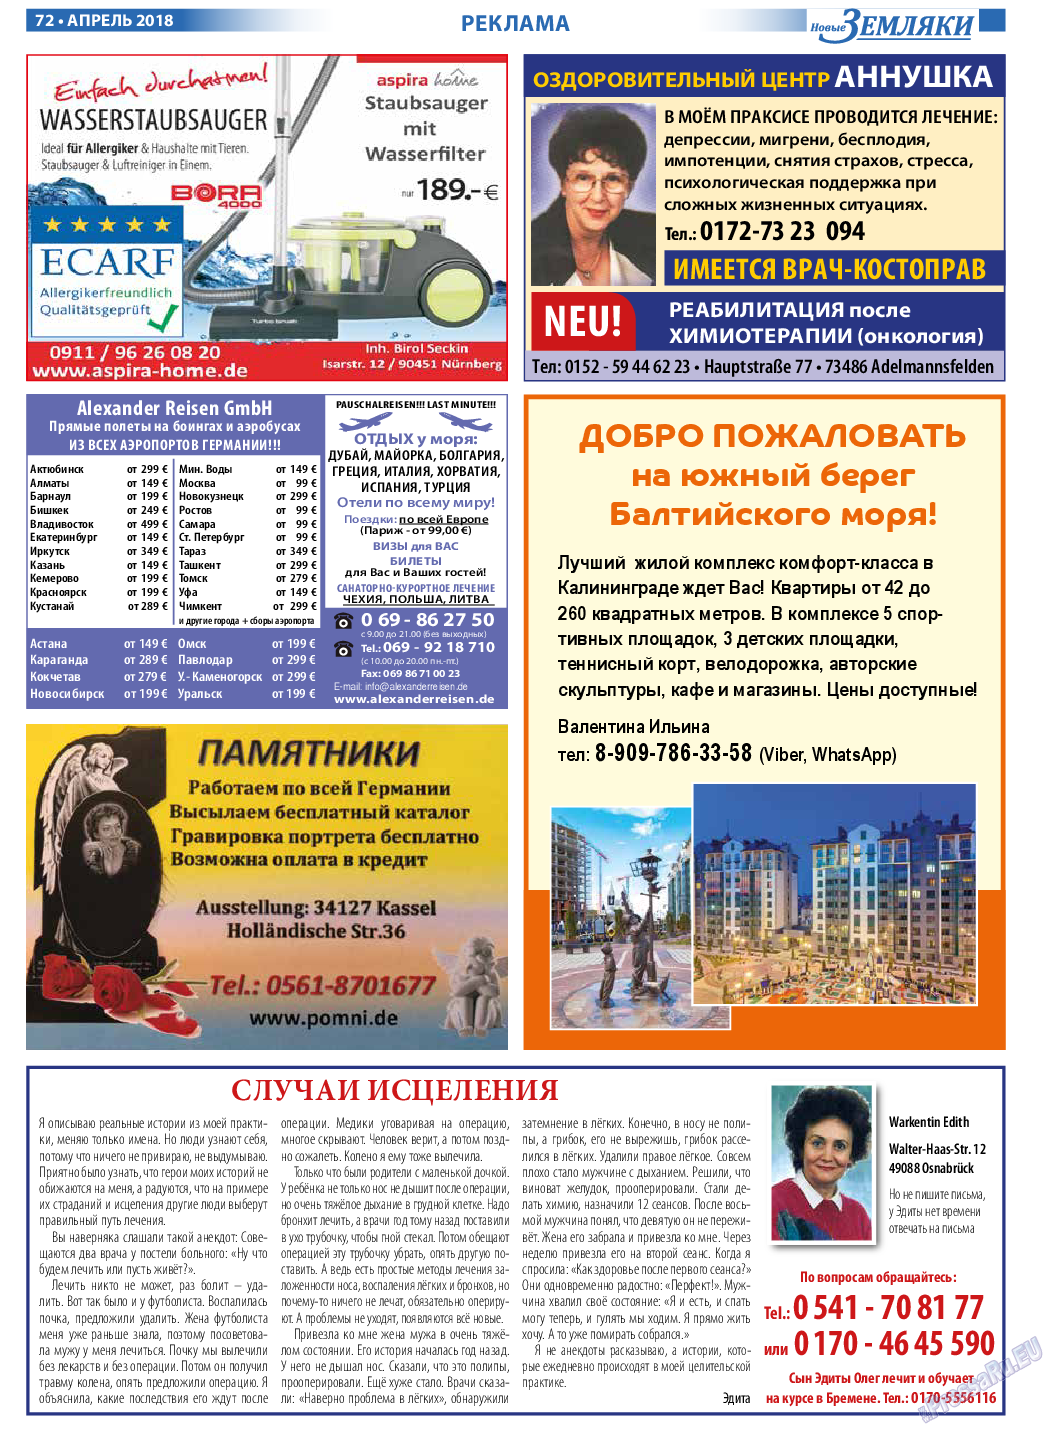 Новые Земляки, газета. 2018 №4 стр.72